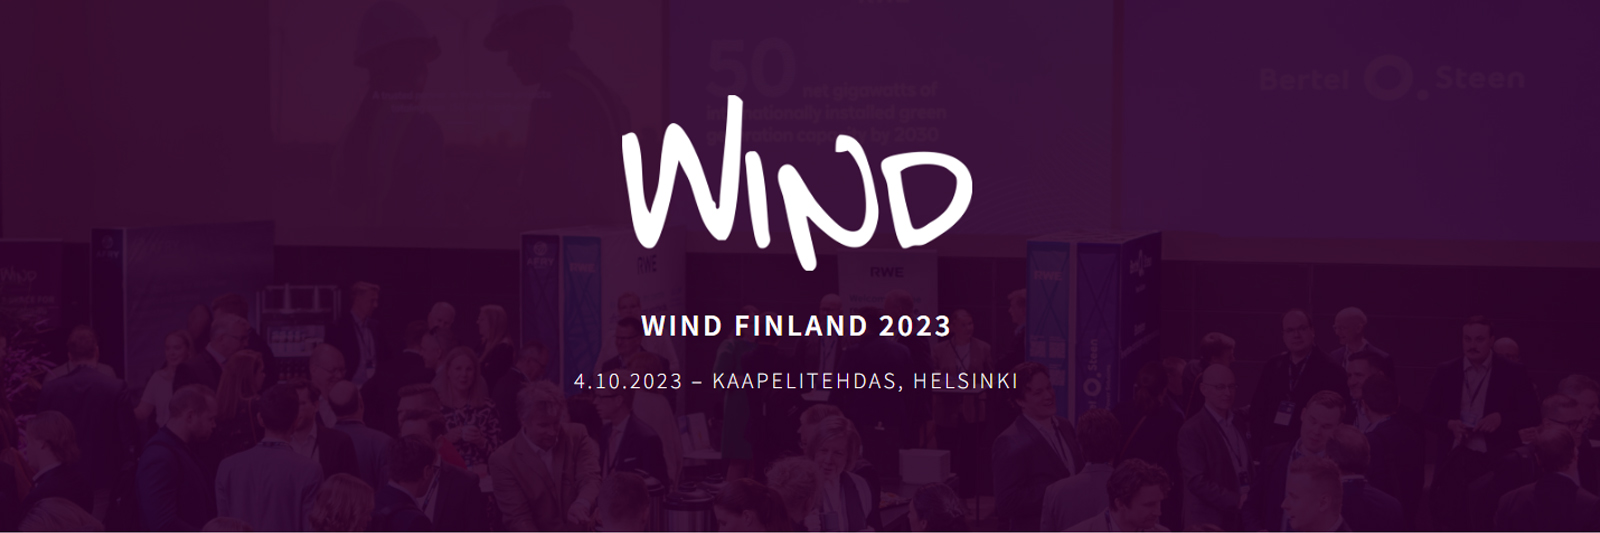 Wind Finland 2023, 4.10.2023